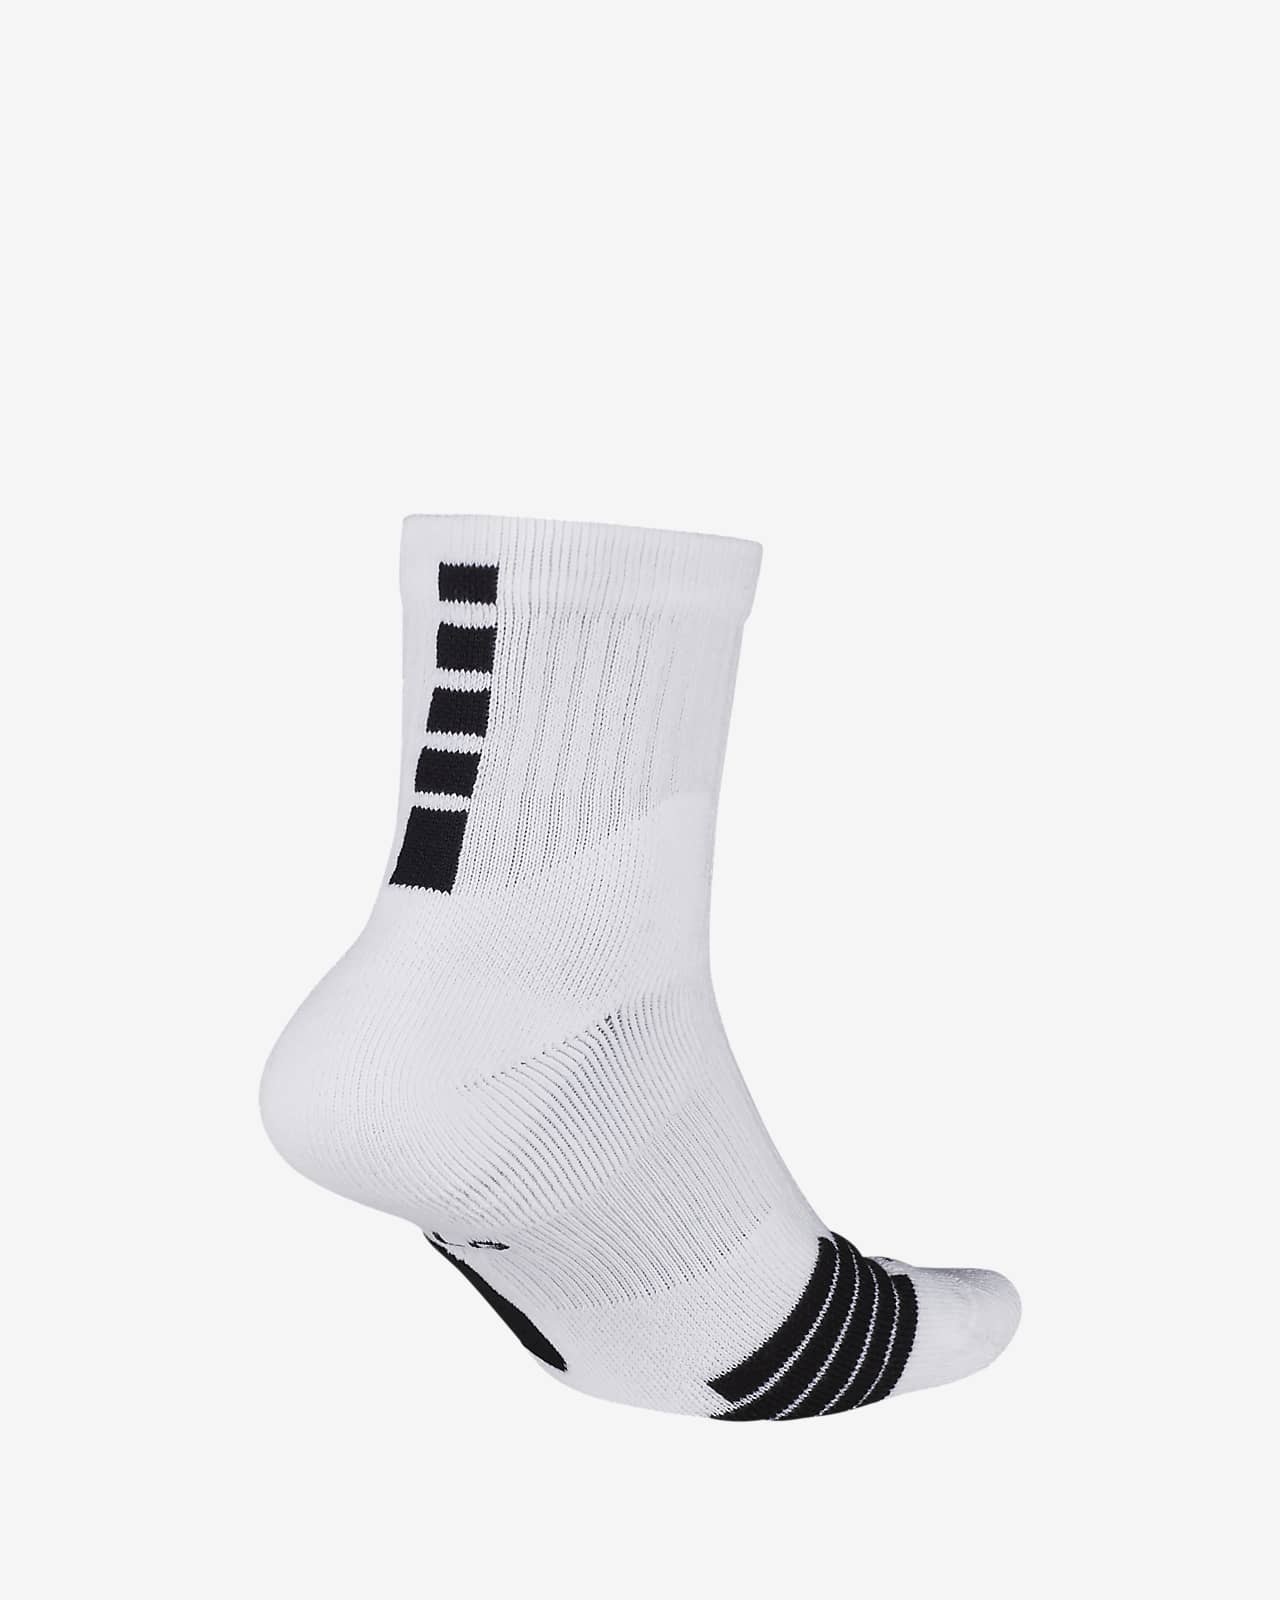 nike mid socks white